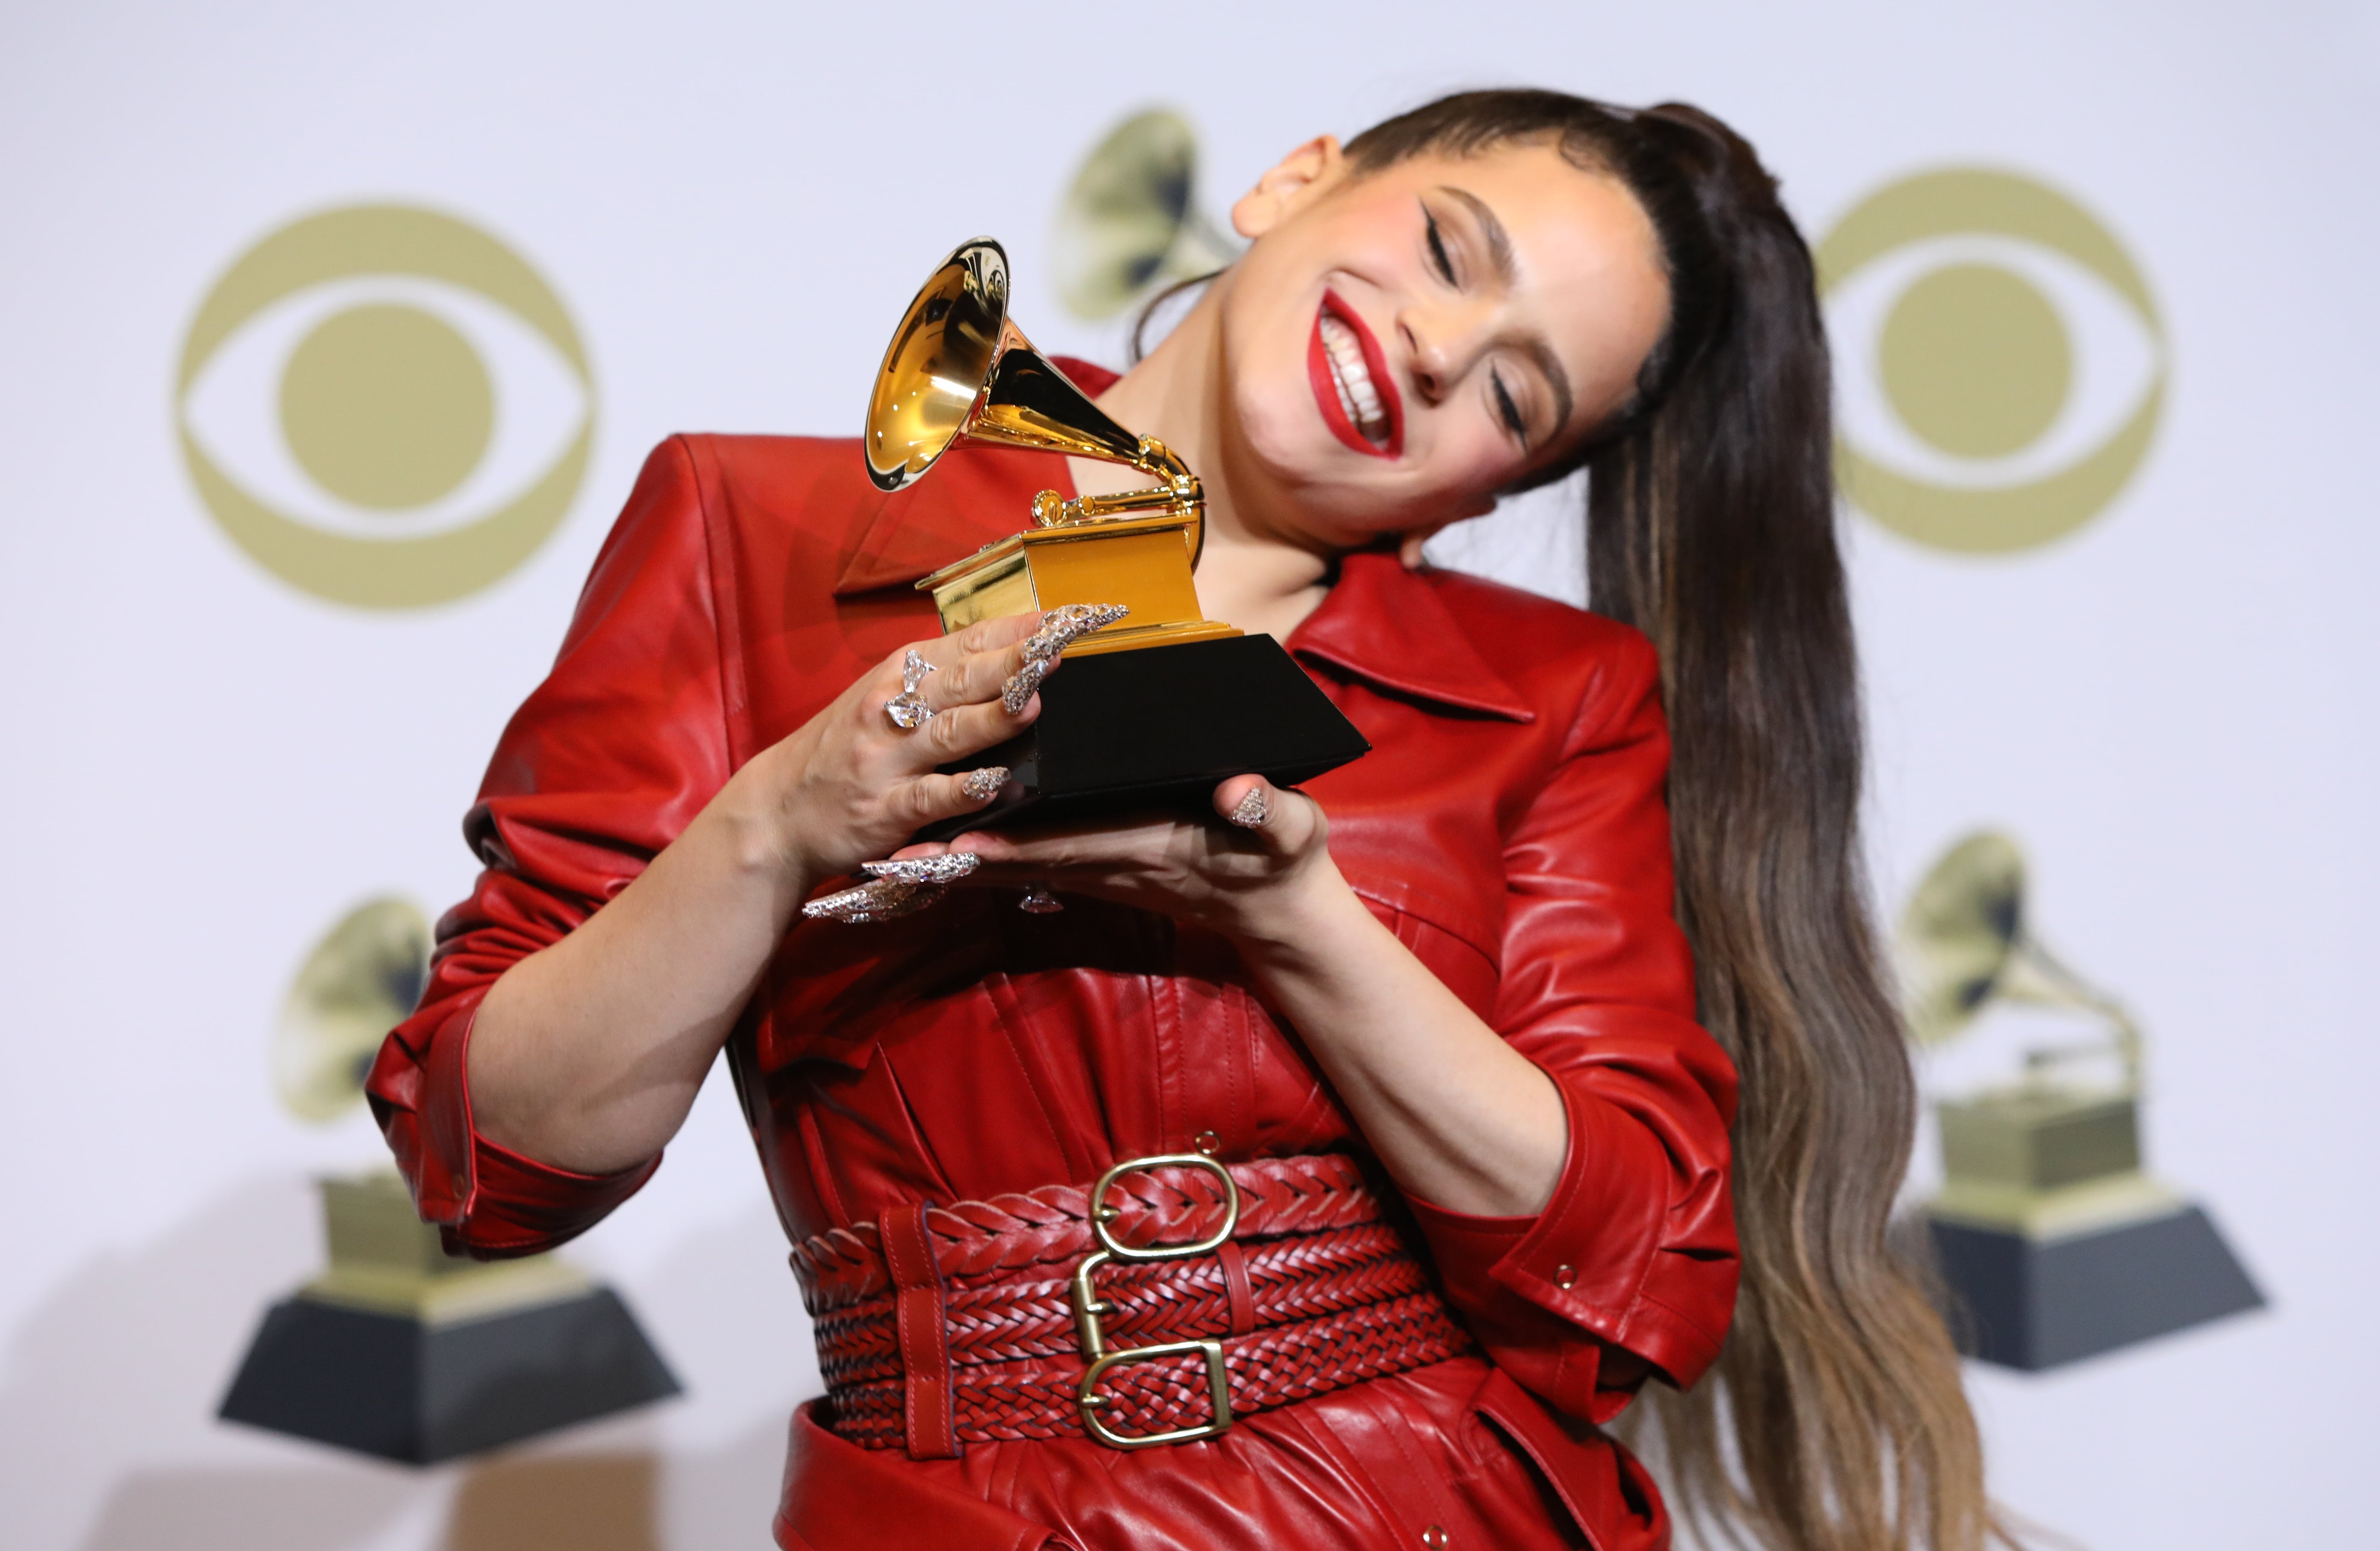 Rosalía wins Grammy award for ‘El Mal Querer’